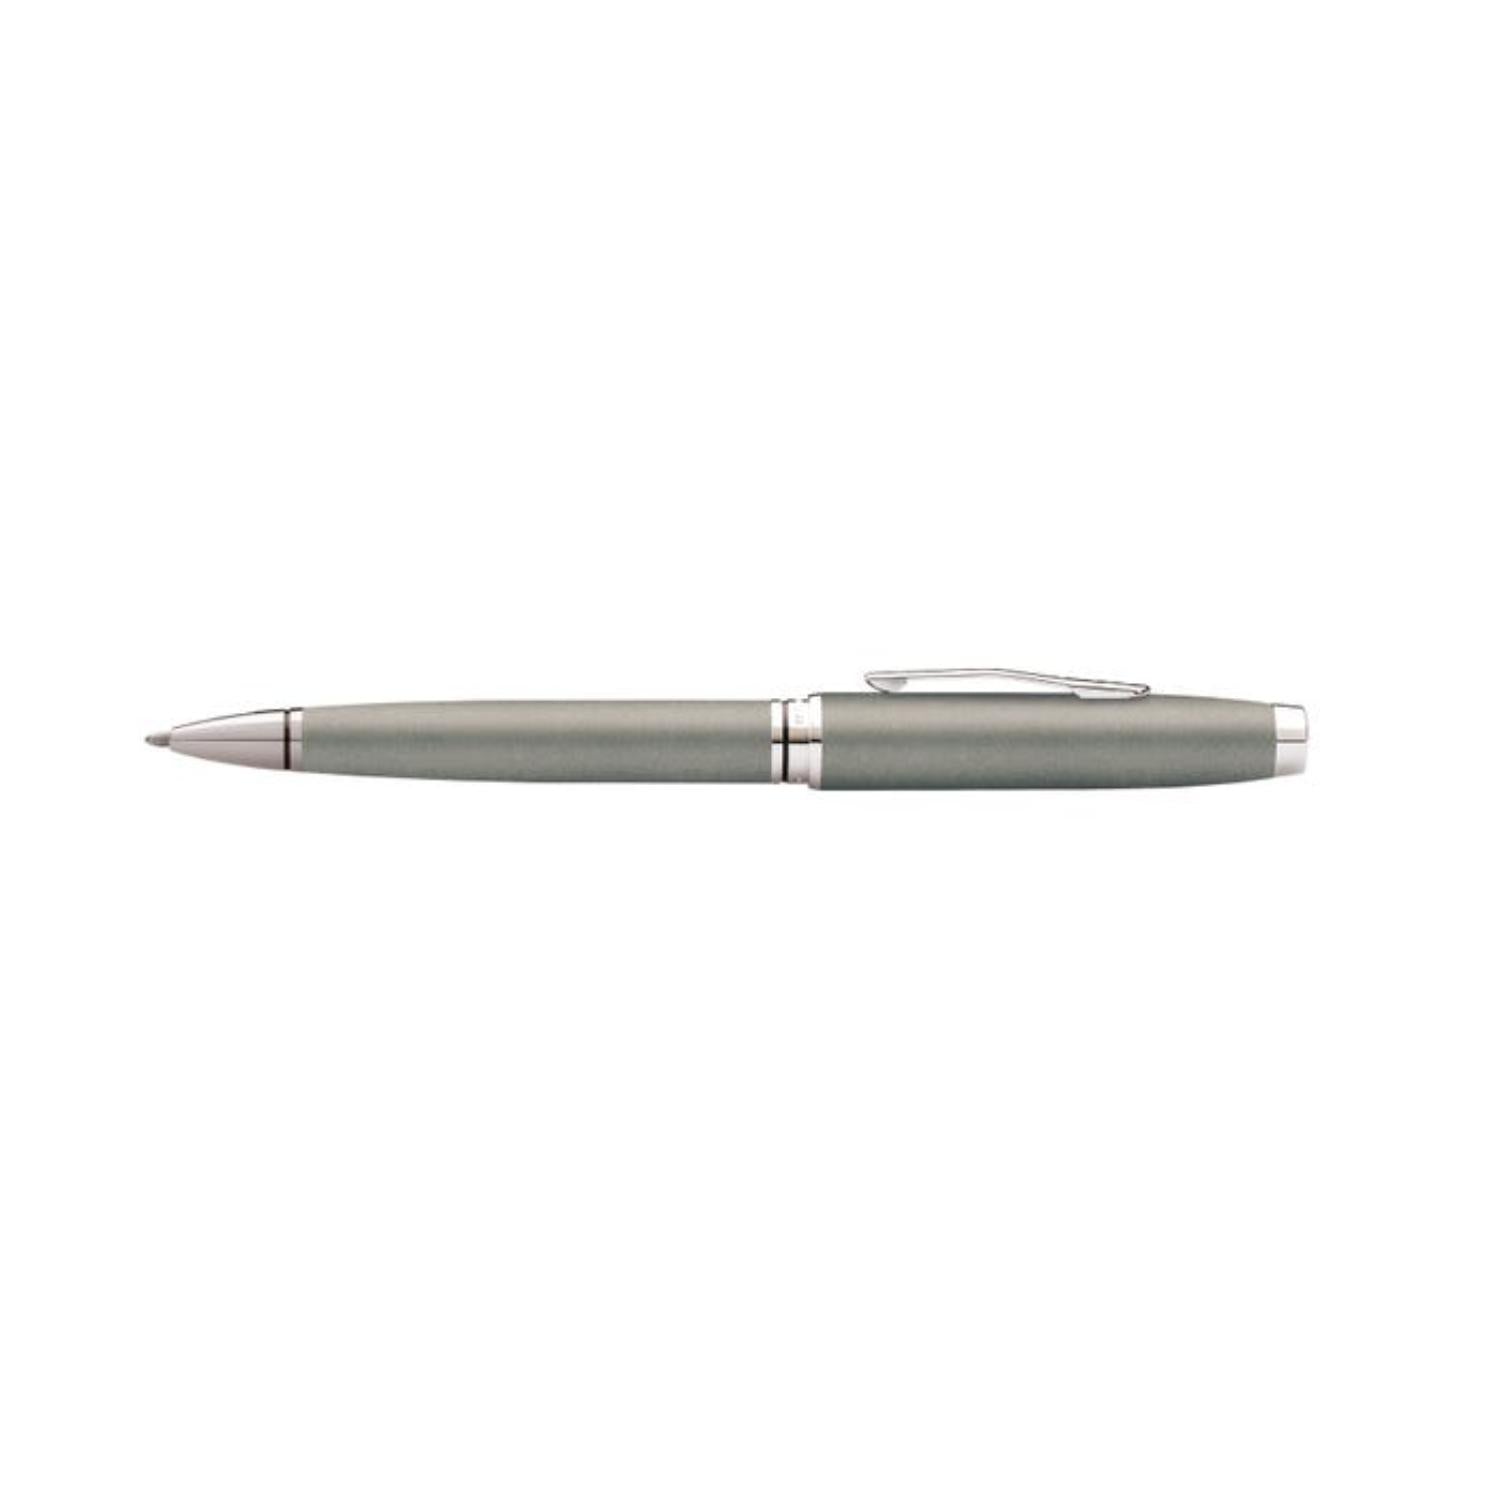 CROSS Coventry Gunmetal Gray Ballpoint Pen - AT0662-8